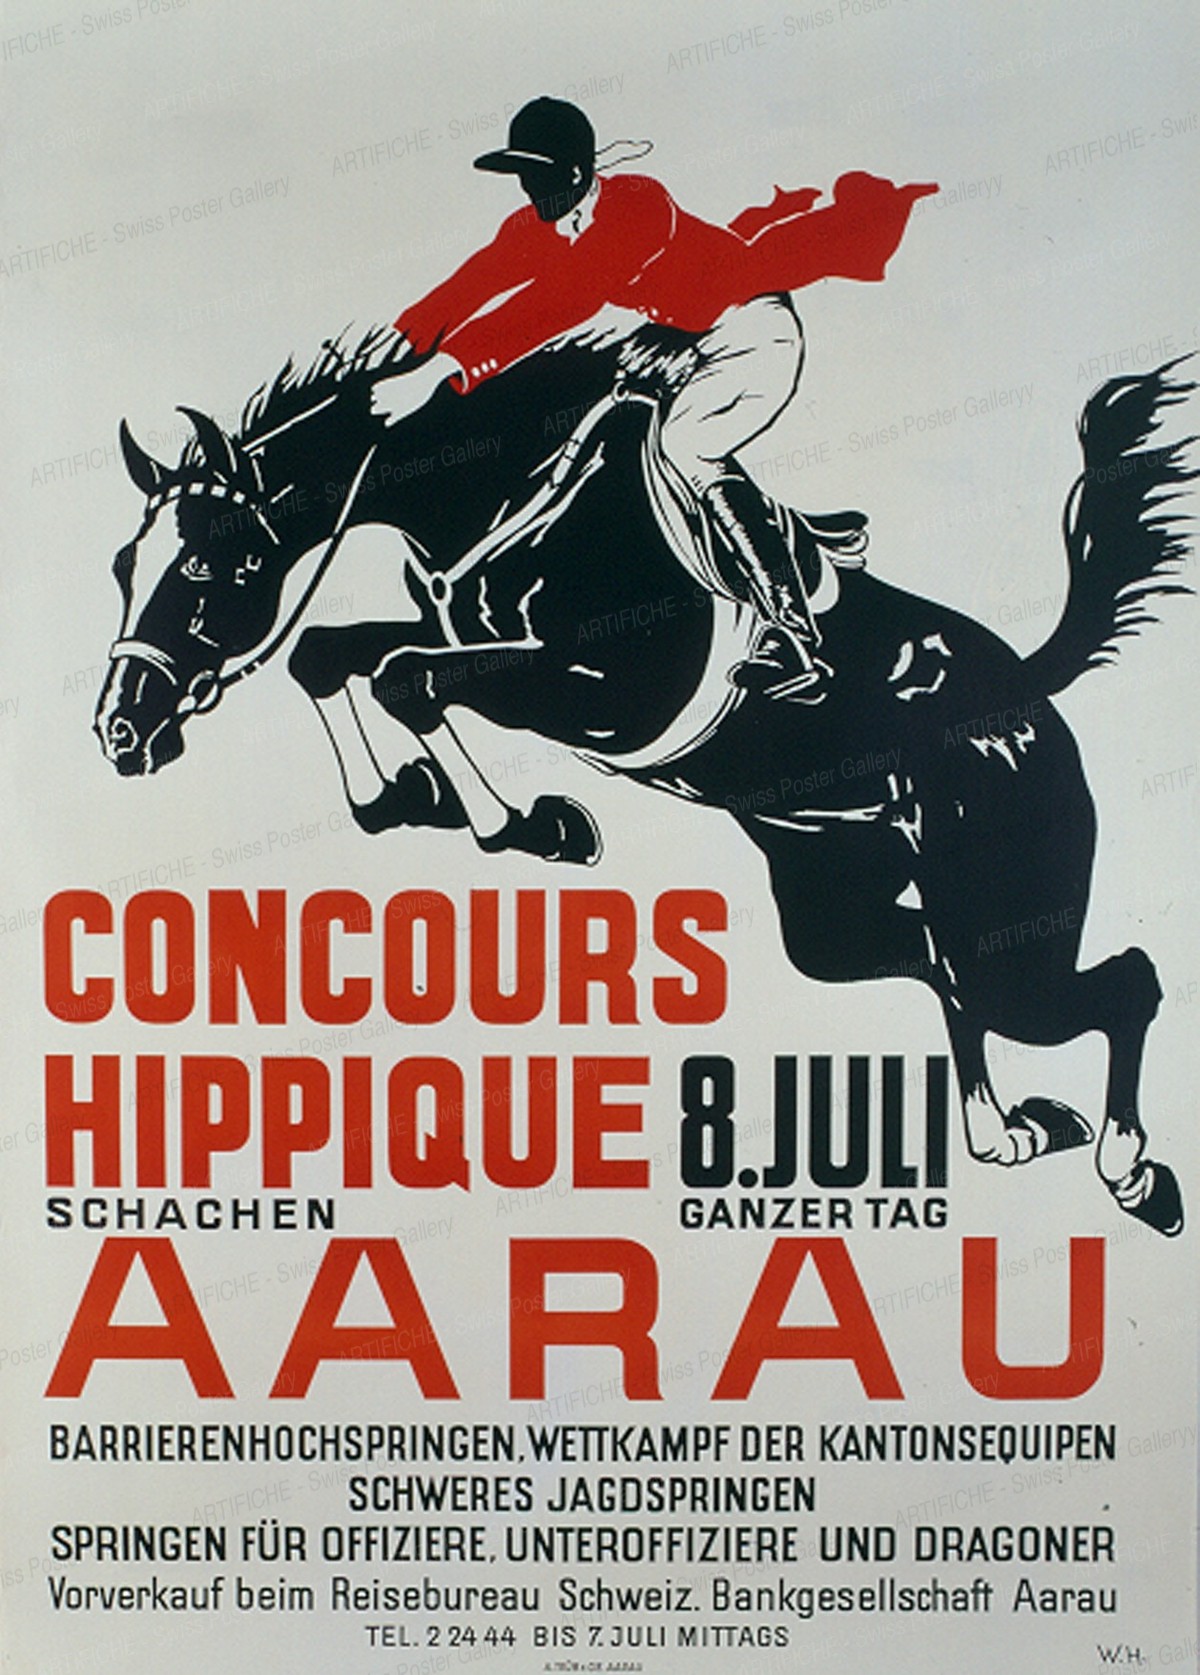 CONCOURS HIPPIQUE 8. JULI AARAU, Monogram W.H.